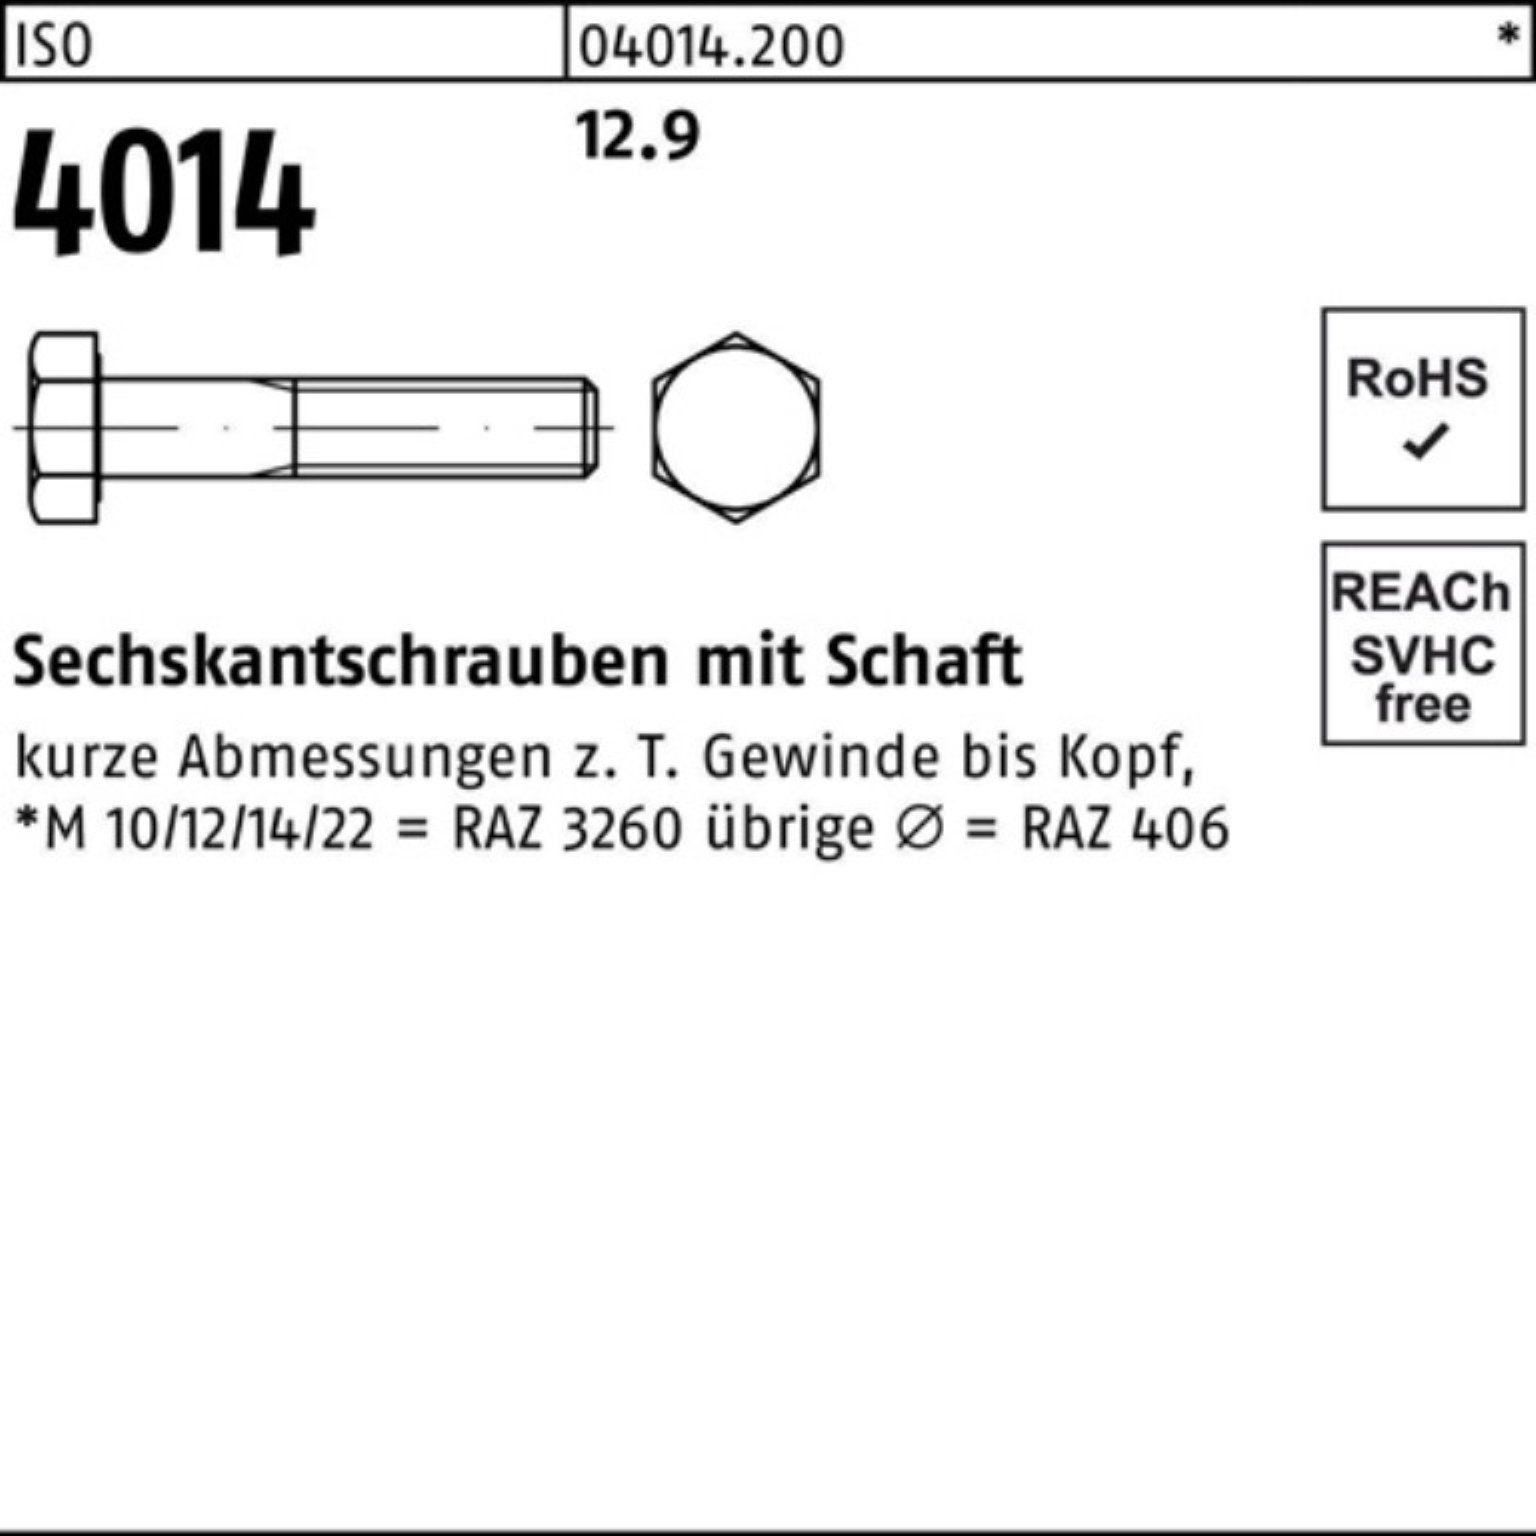 Pack Bufab 5 Stück M30x 4014 12.9 Schaft 100er 90 Sechskantschraube Sechskantschraube ISO ISO